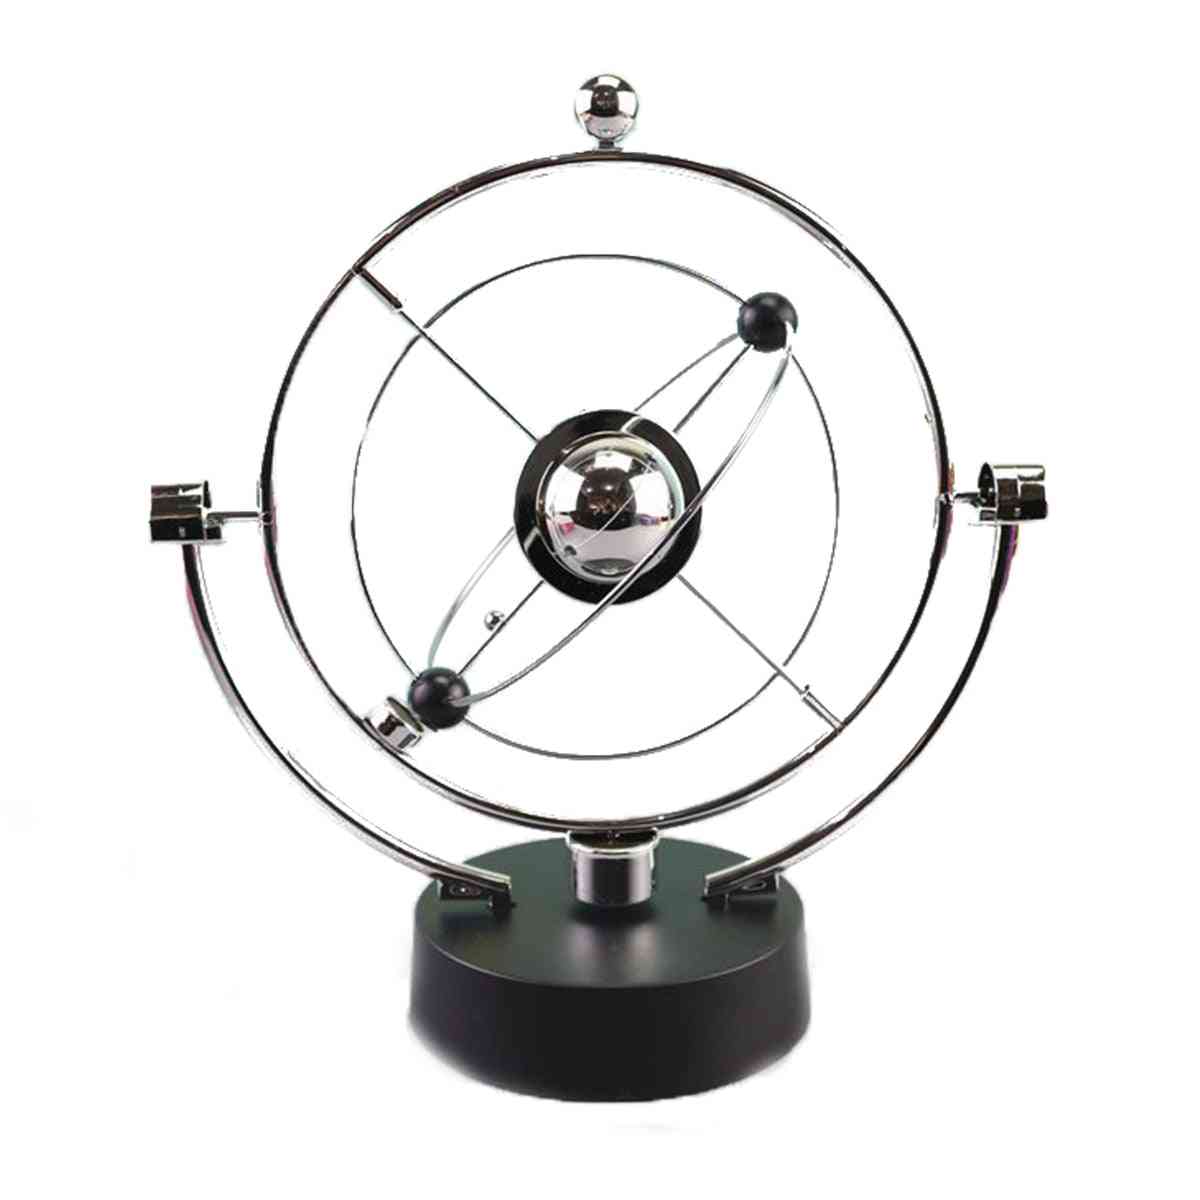 Rotation Perpetual Motion Swing Himmelskugel Newton Pendel Modell Kinetic Orbital Revolving Gadget